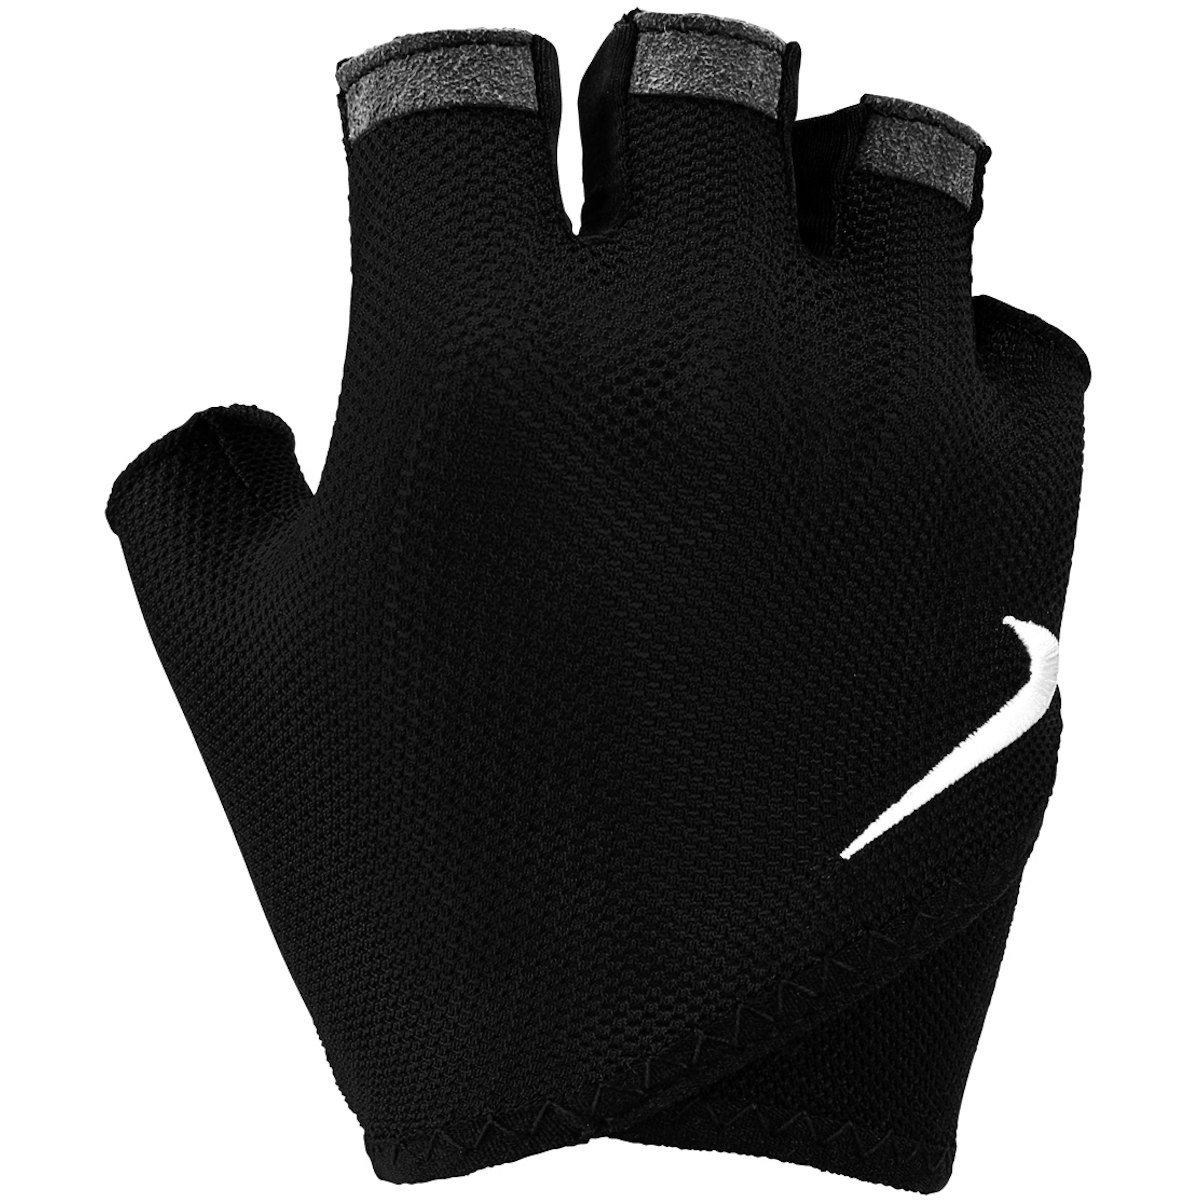 Bild von Nike Printed Gym Essential Fitness Damen Handschuhe - black/white 010